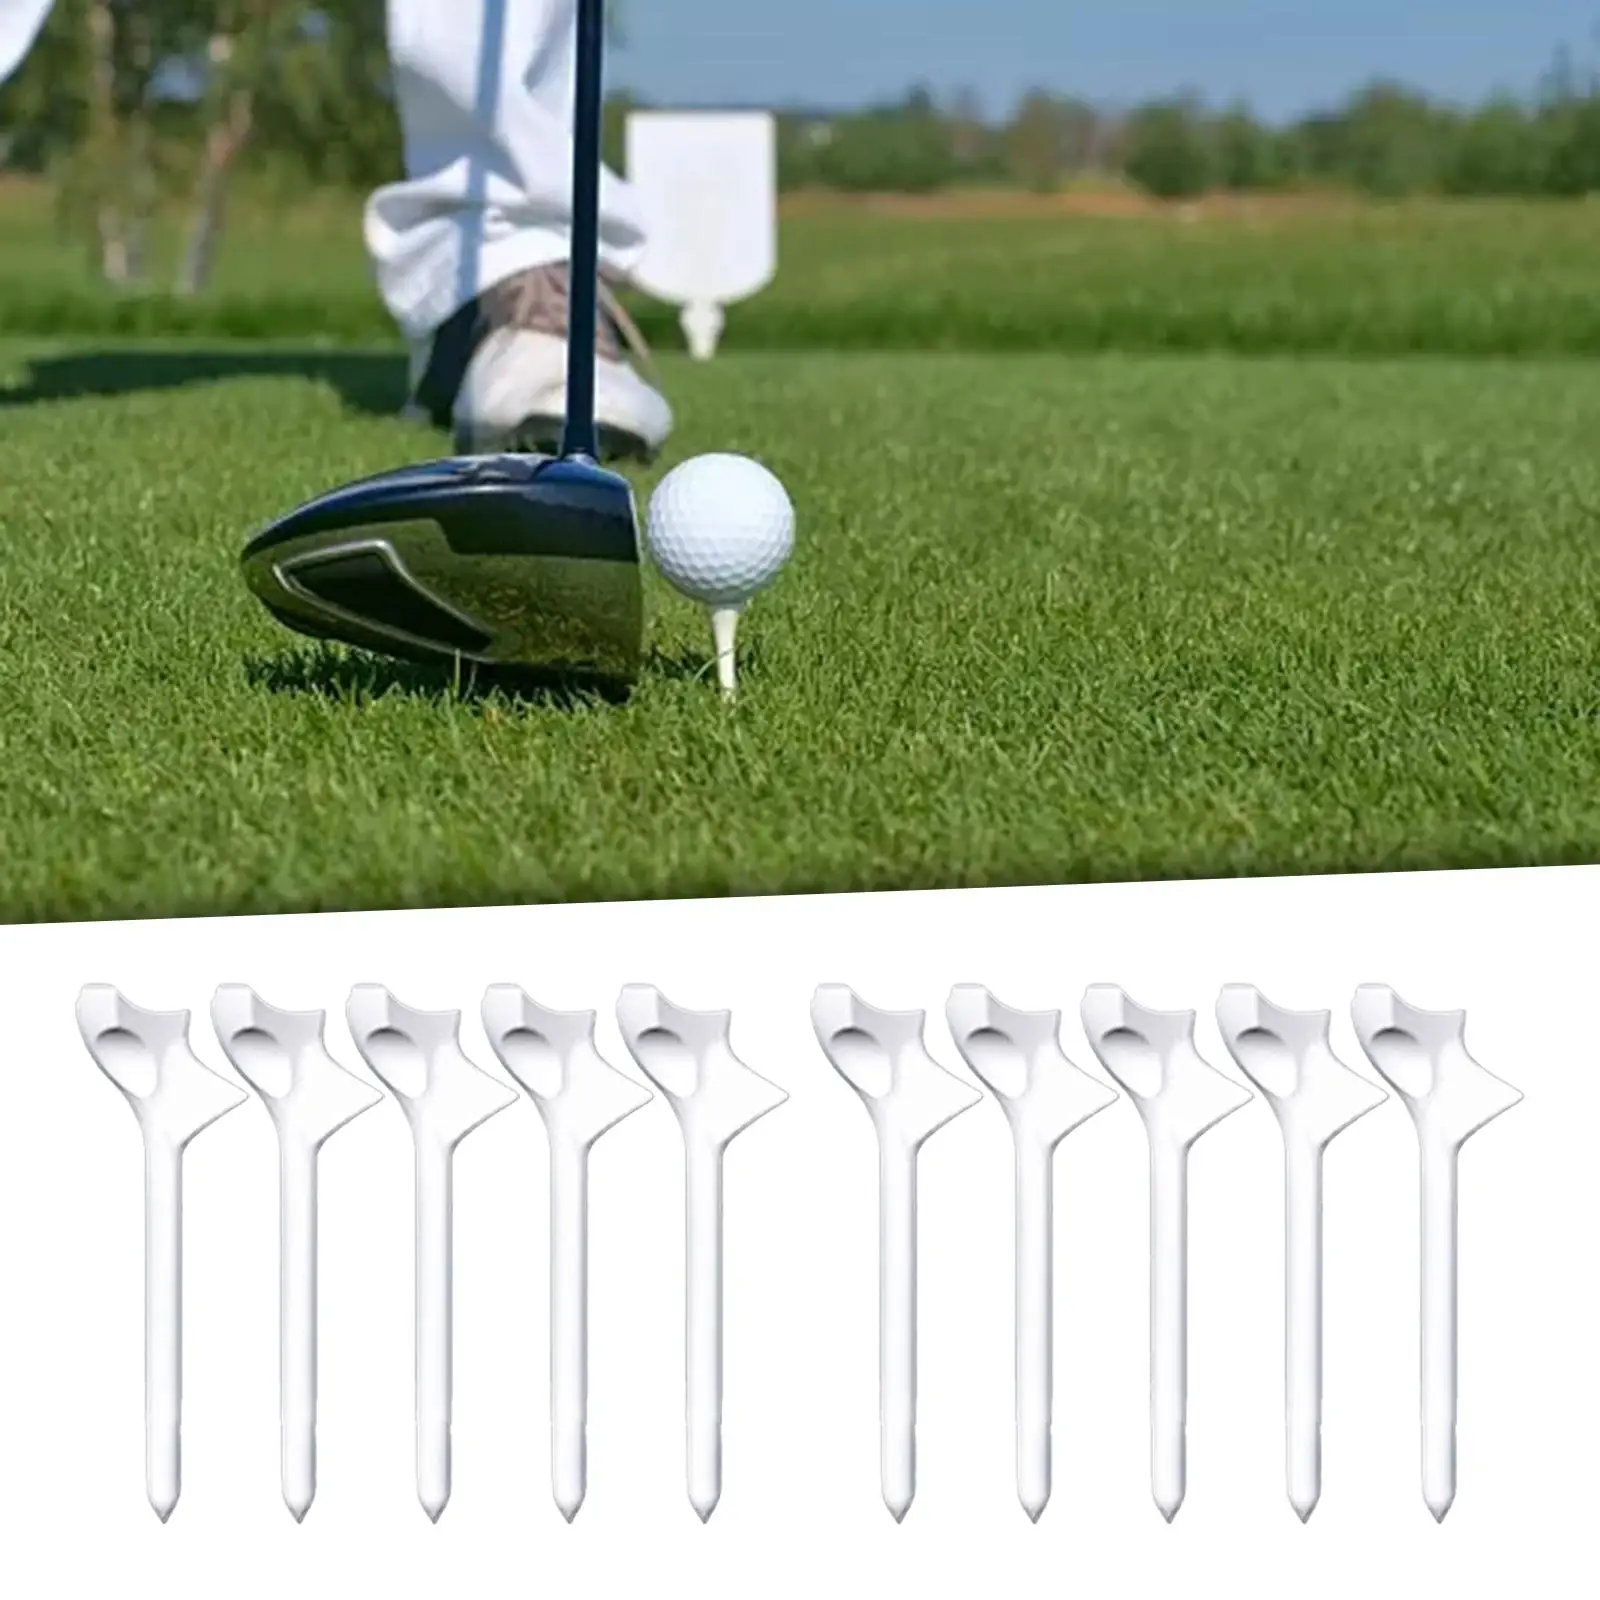 

10 Pieces Golf Tees Golf Equipment 10° Beginner for Women Men Unbreakable 83mm Professional Golfing Tees Golf Ball Tee Holder